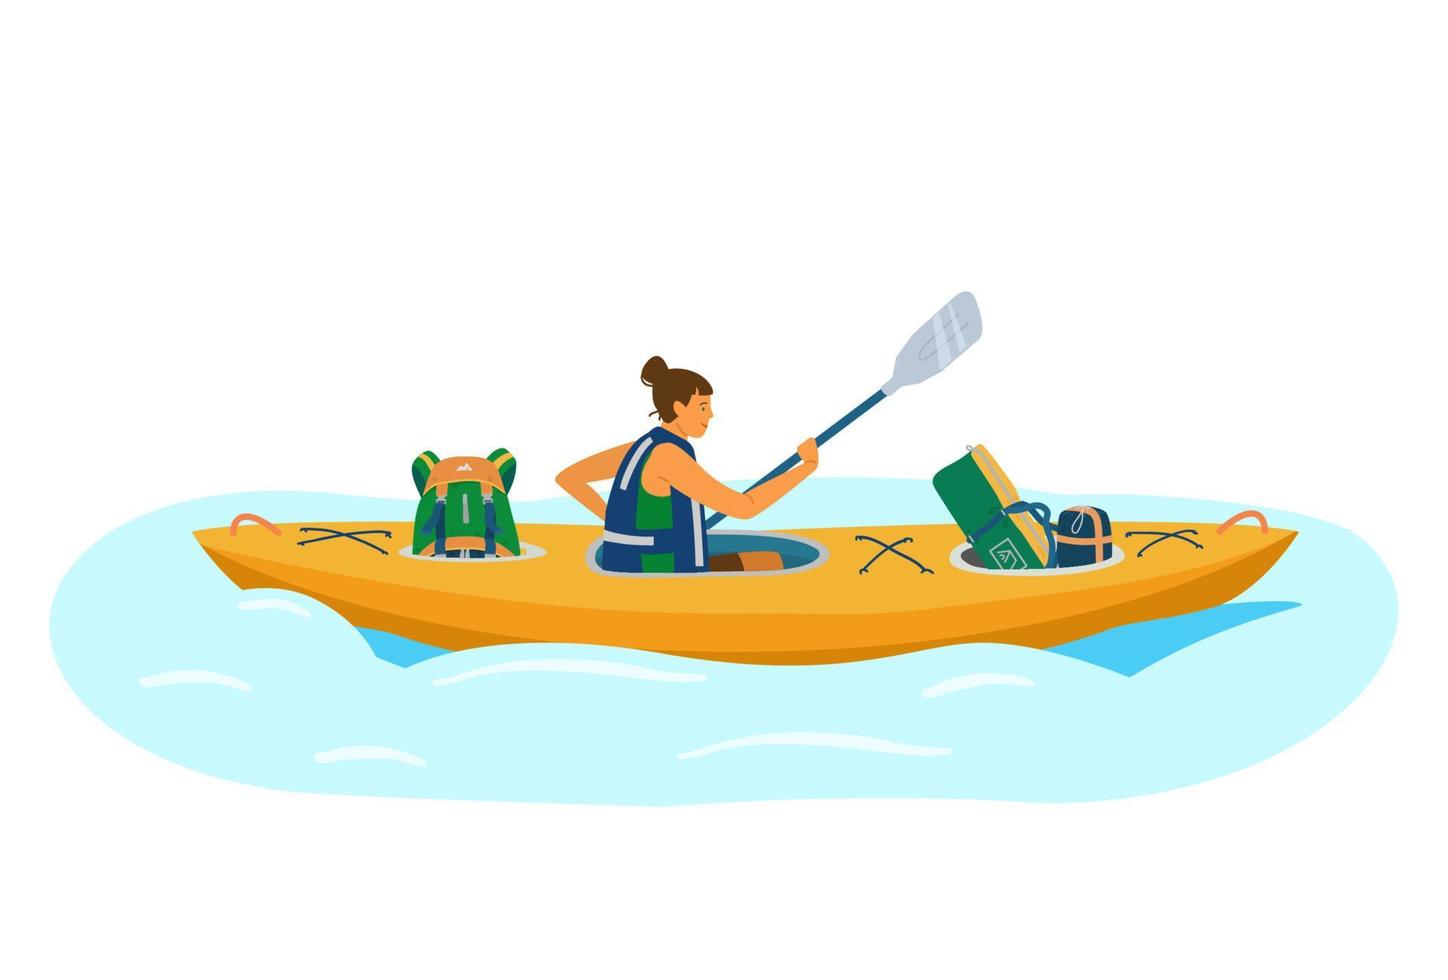 mujer en filas de chalecos salvavidas en kayak con equipo turístico. mochila, saco de dormir, tienda de campaña. turista en viaje de agua. ilustración vectorial de dibujos animados plana. vector